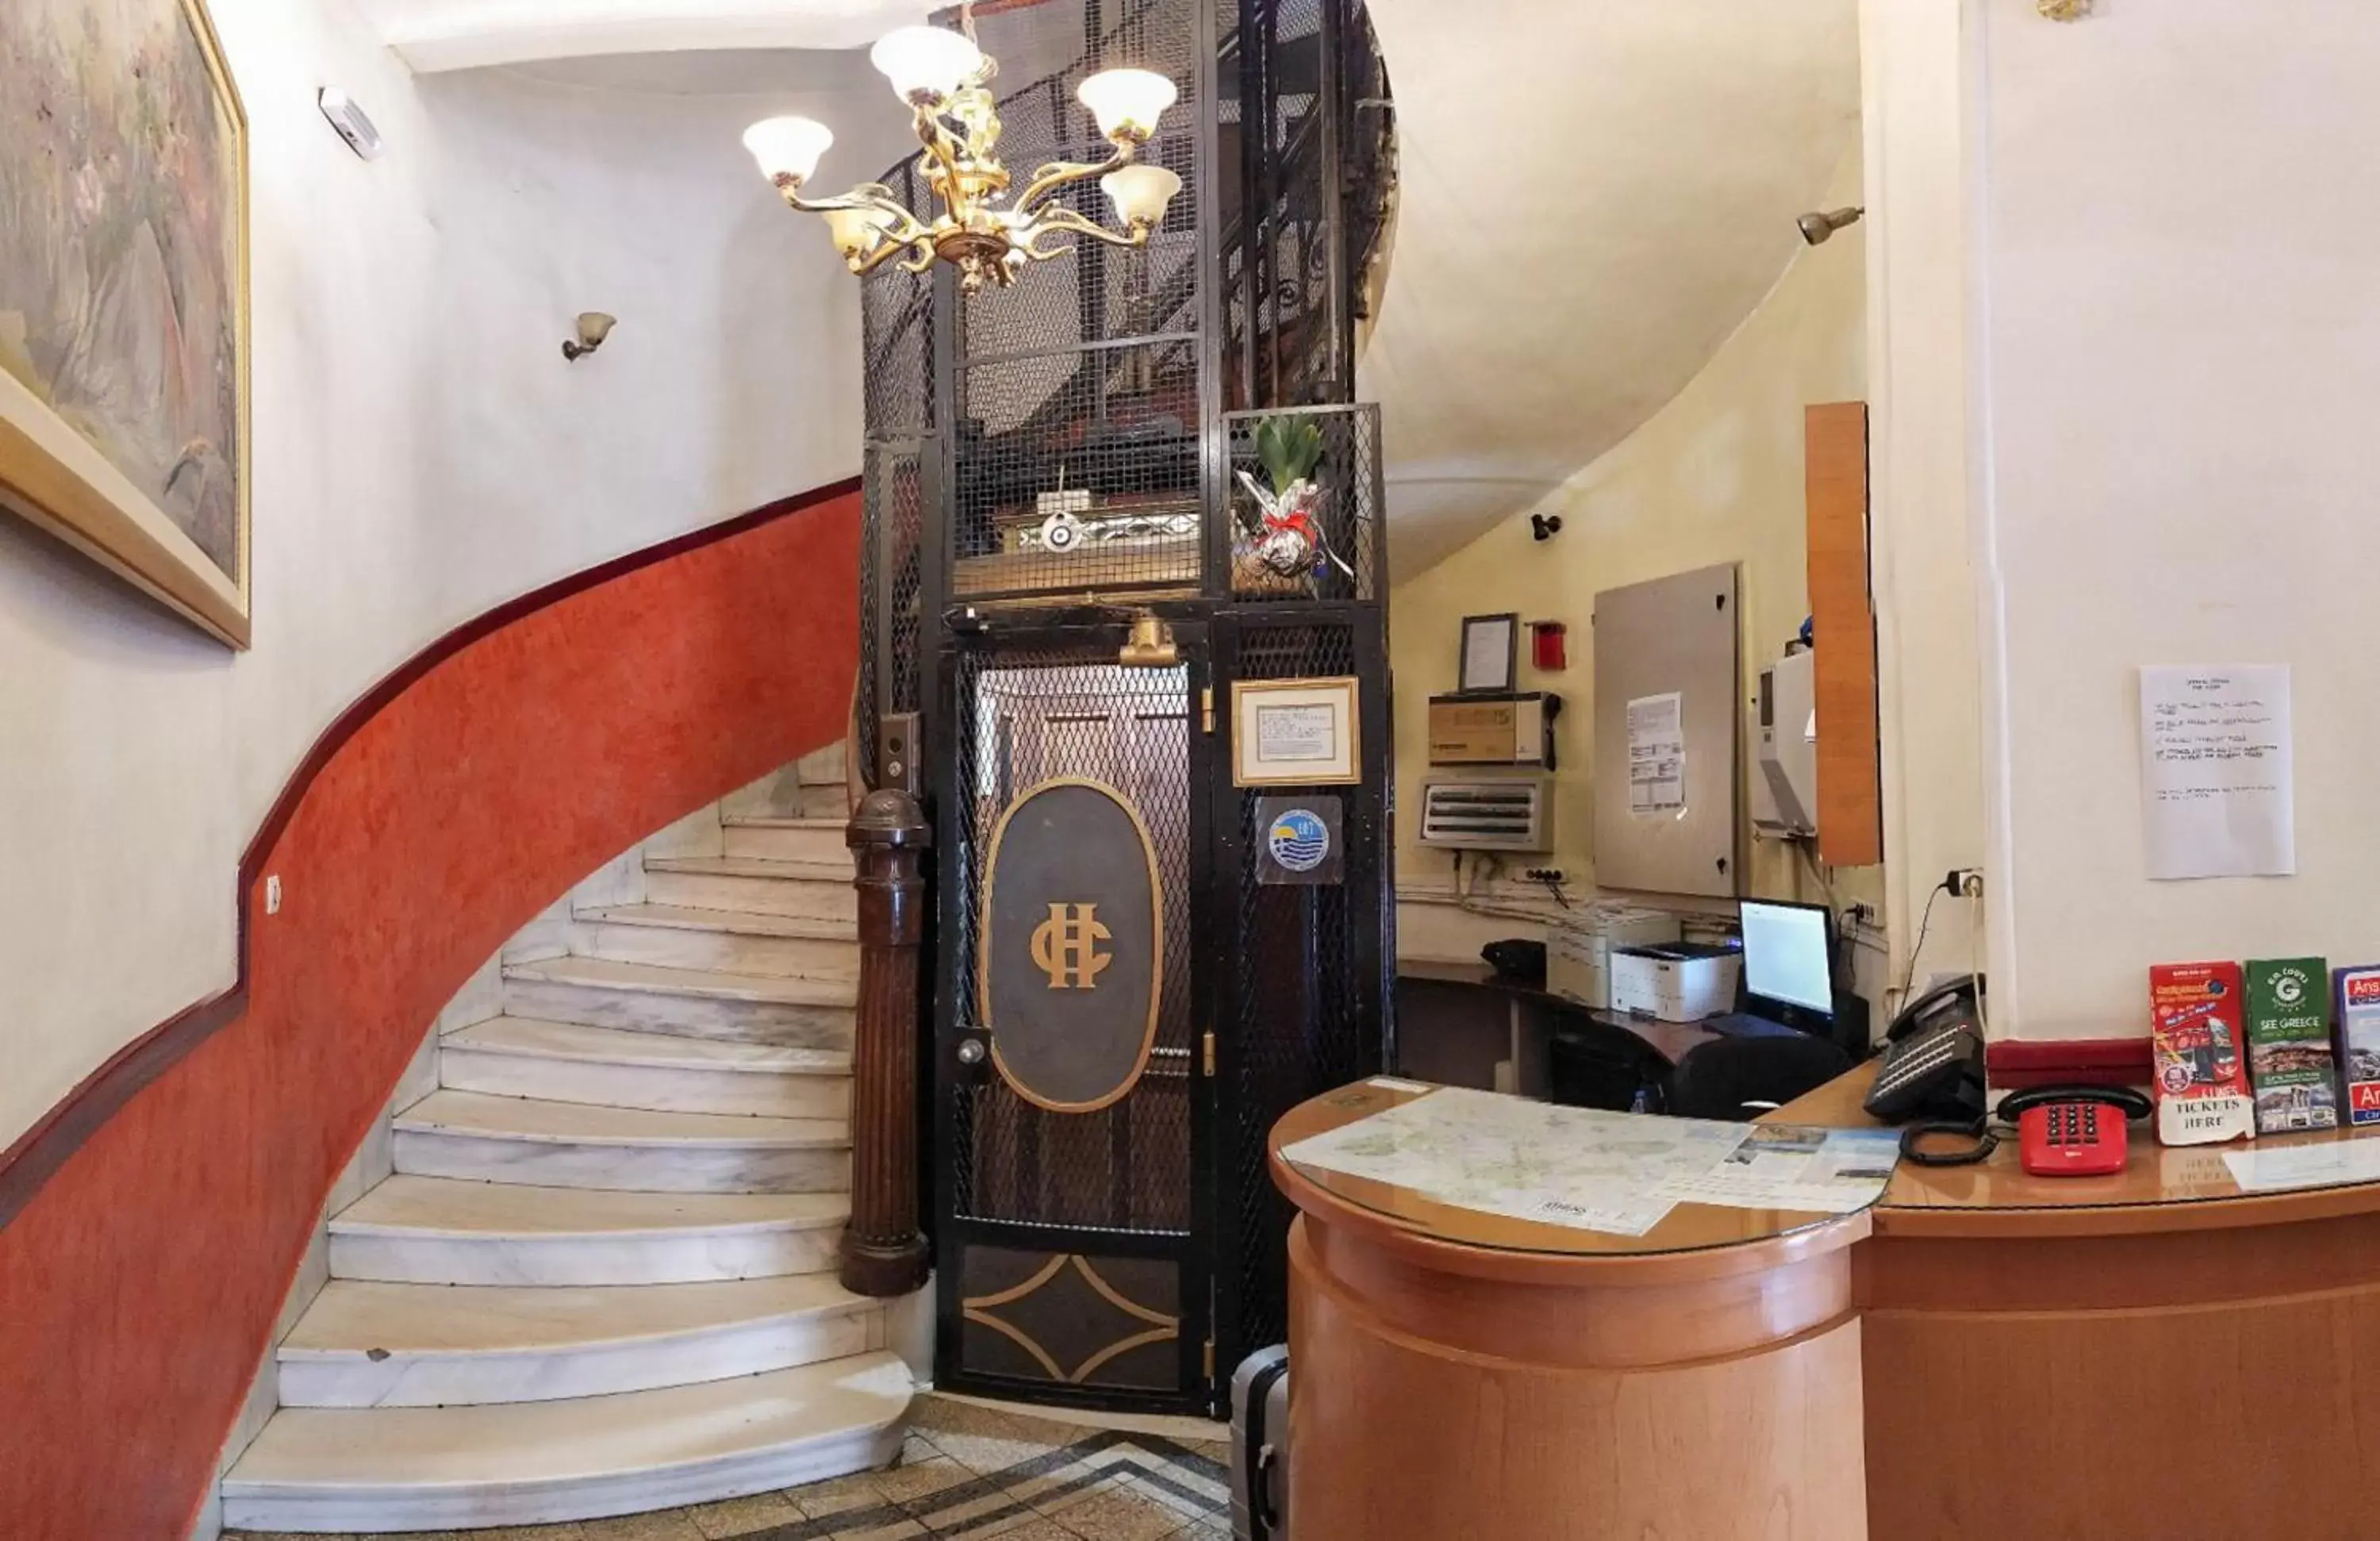 Lobby or reception, Lobby/Reception in Cecil Hotel